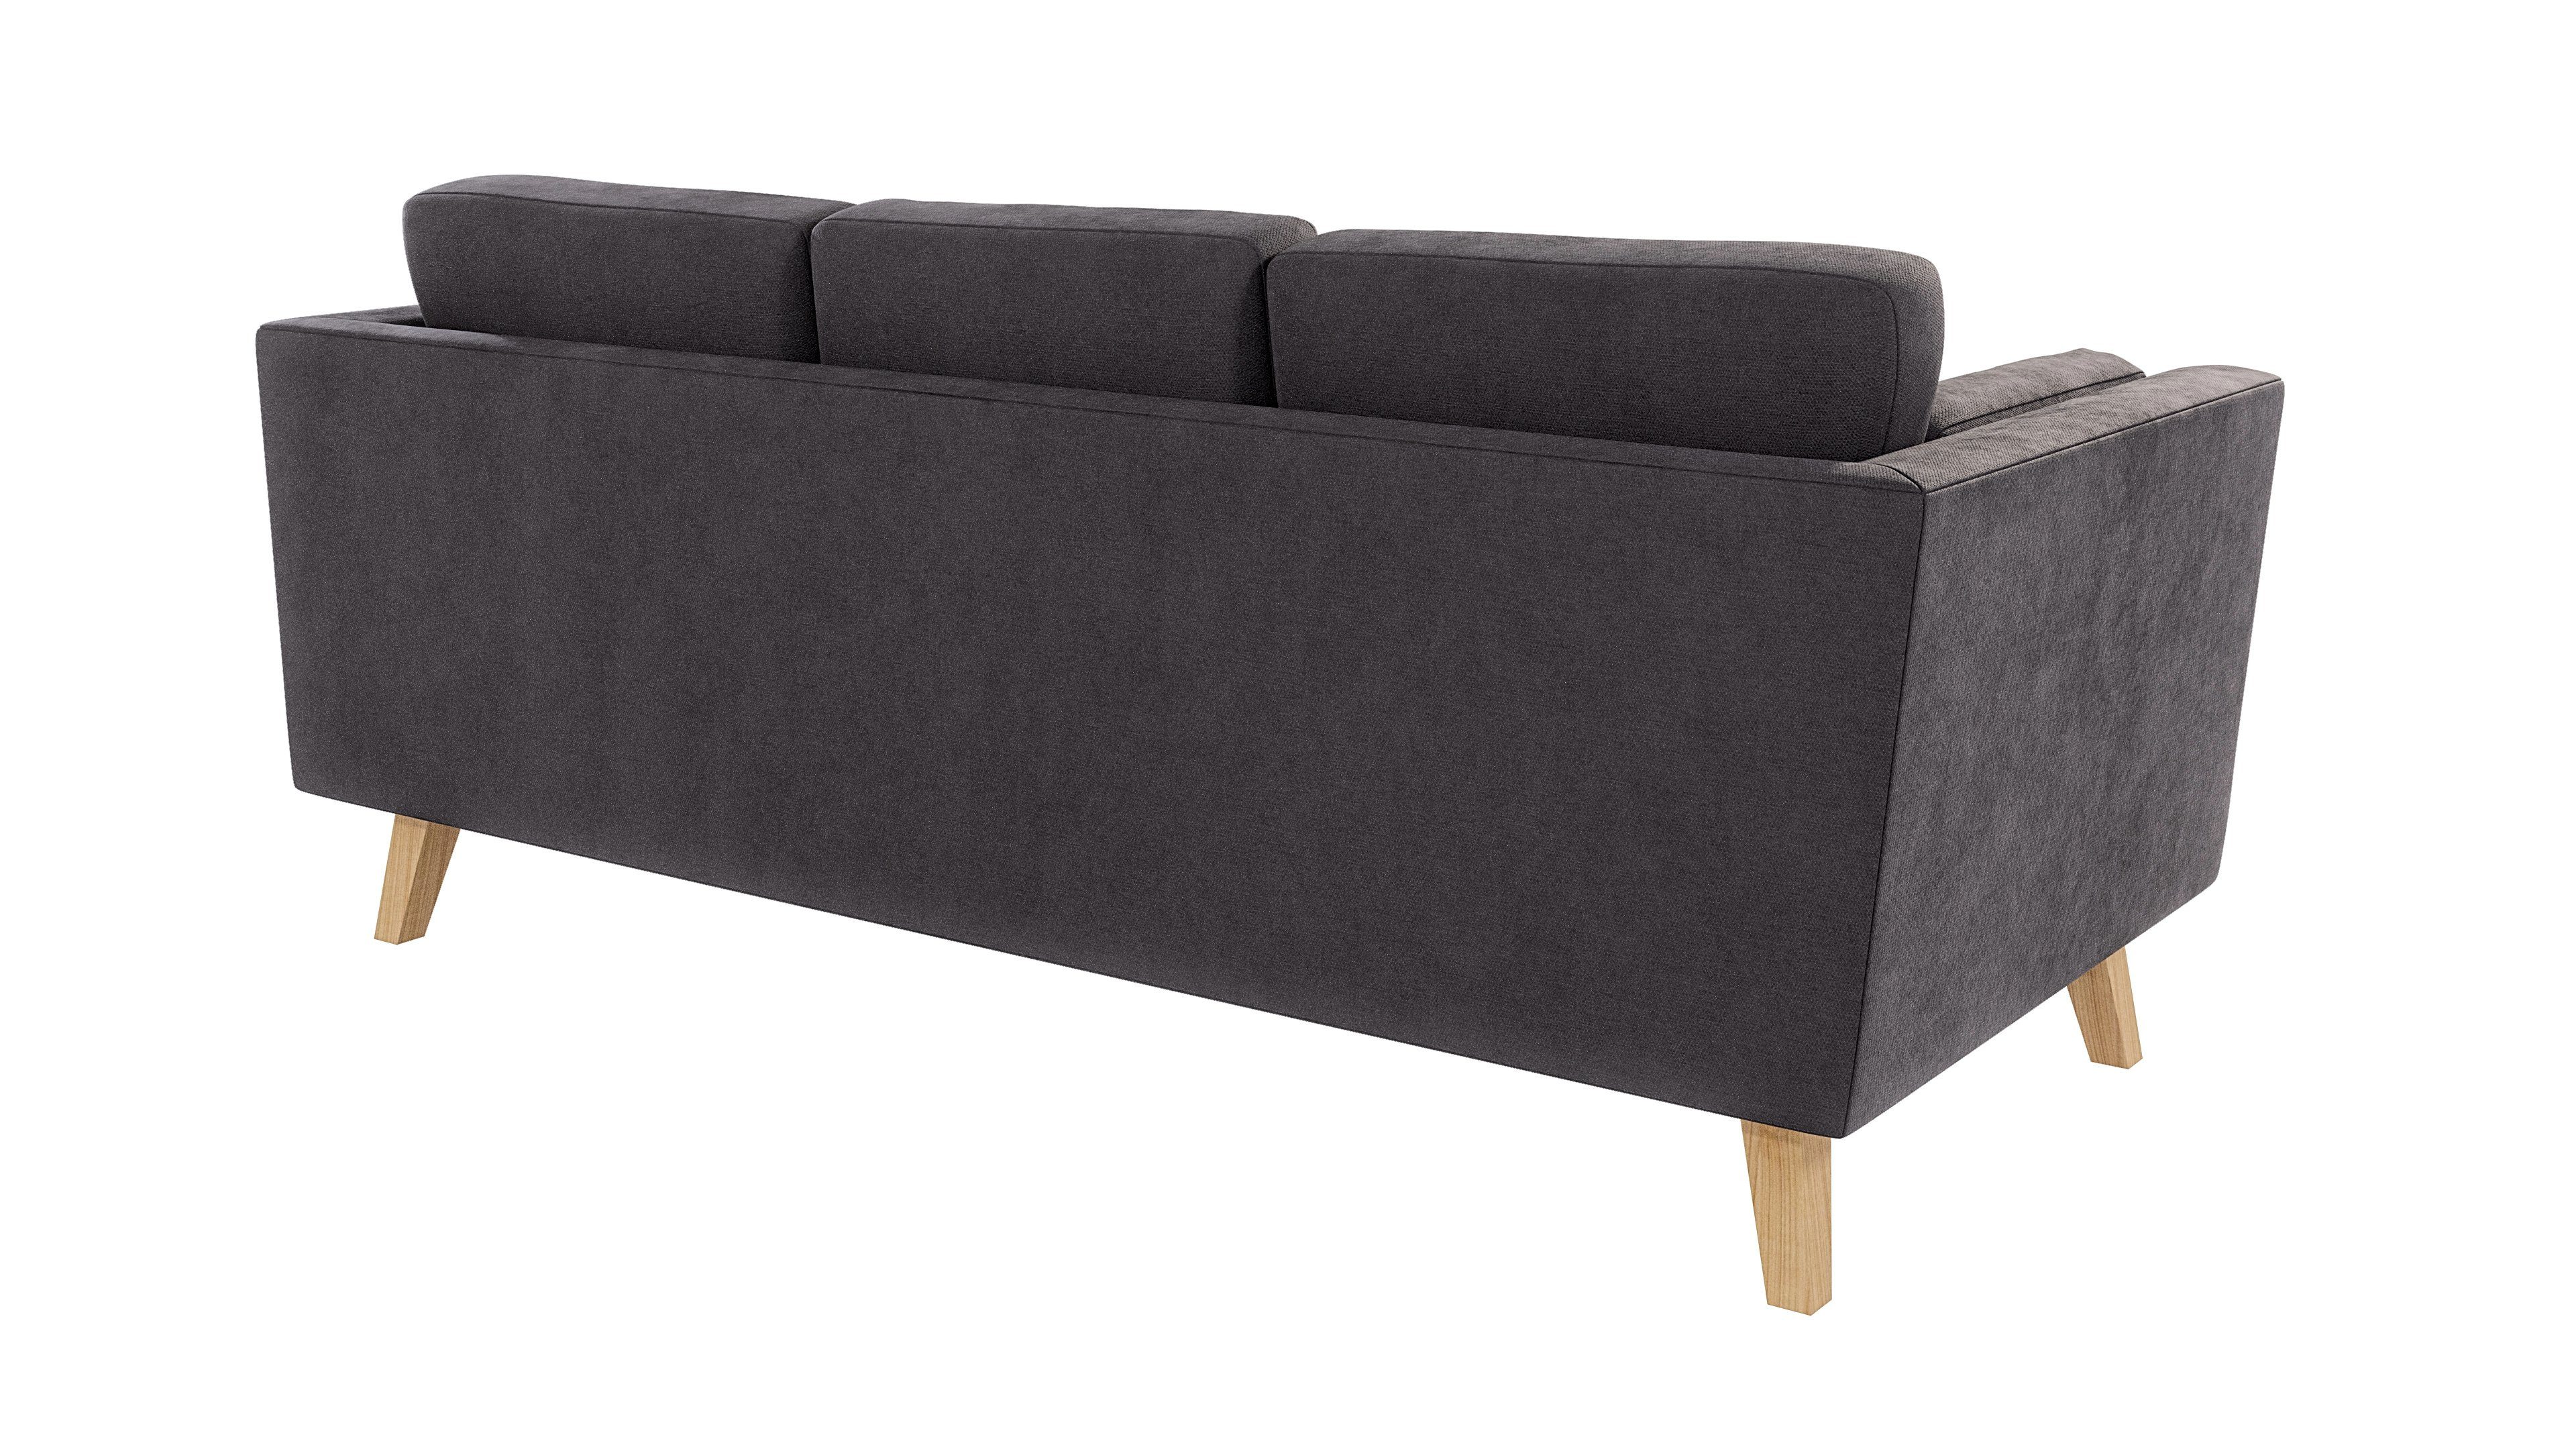 S-Style Möbel 3-Sitzer Angeles Design, skandinavischen im mit Graphit Sofa Wellenfederung